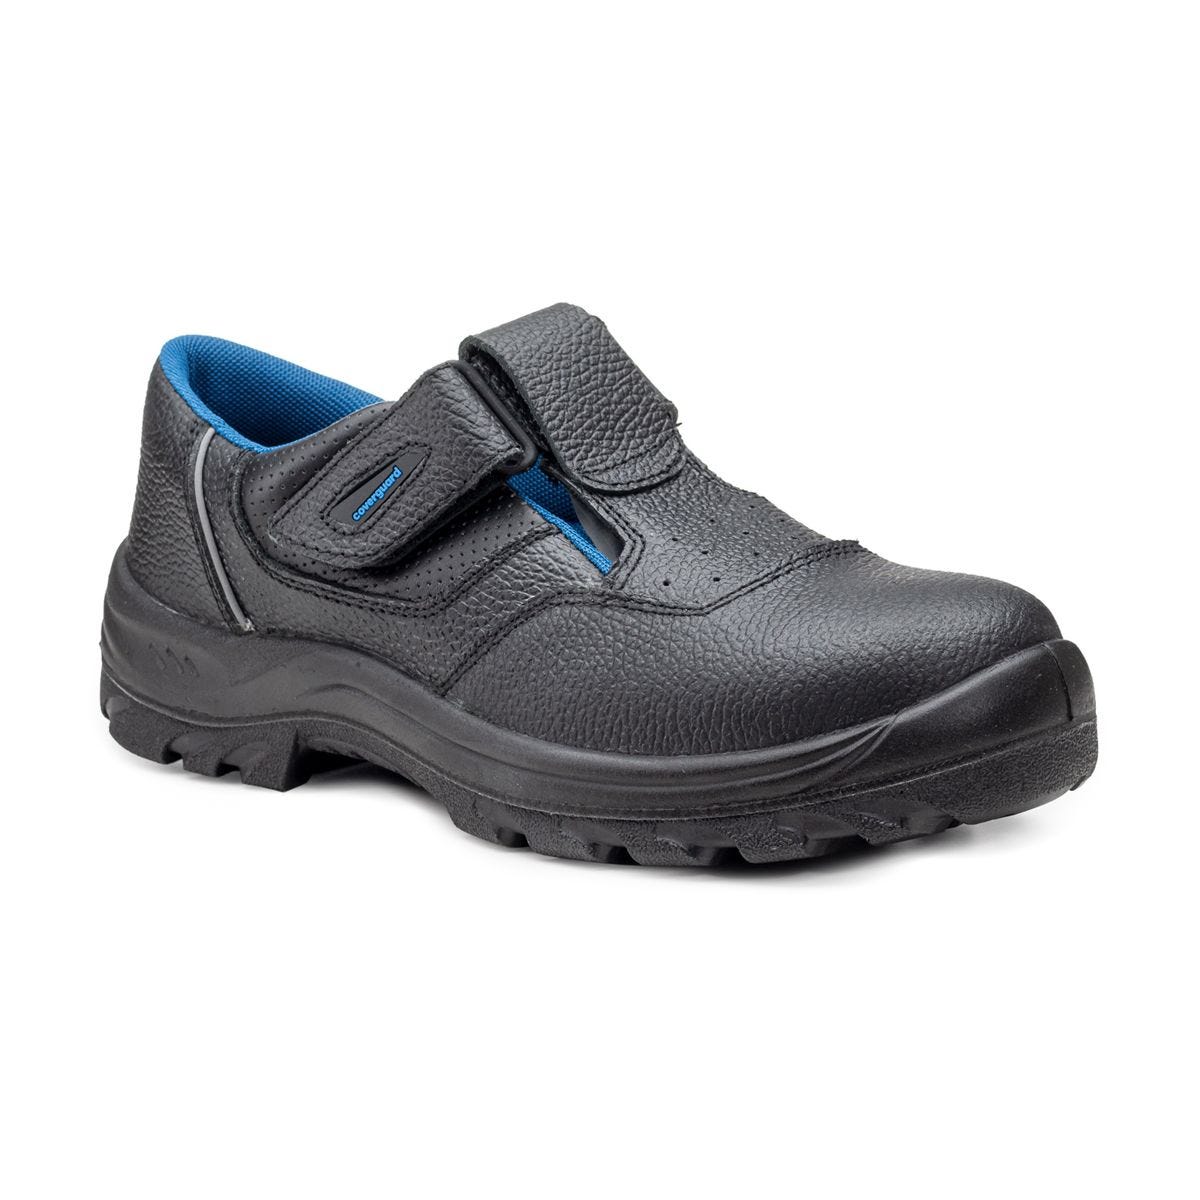 Sandales de sécurité basses Bosco II noir - Coverguard - Taille 44 0